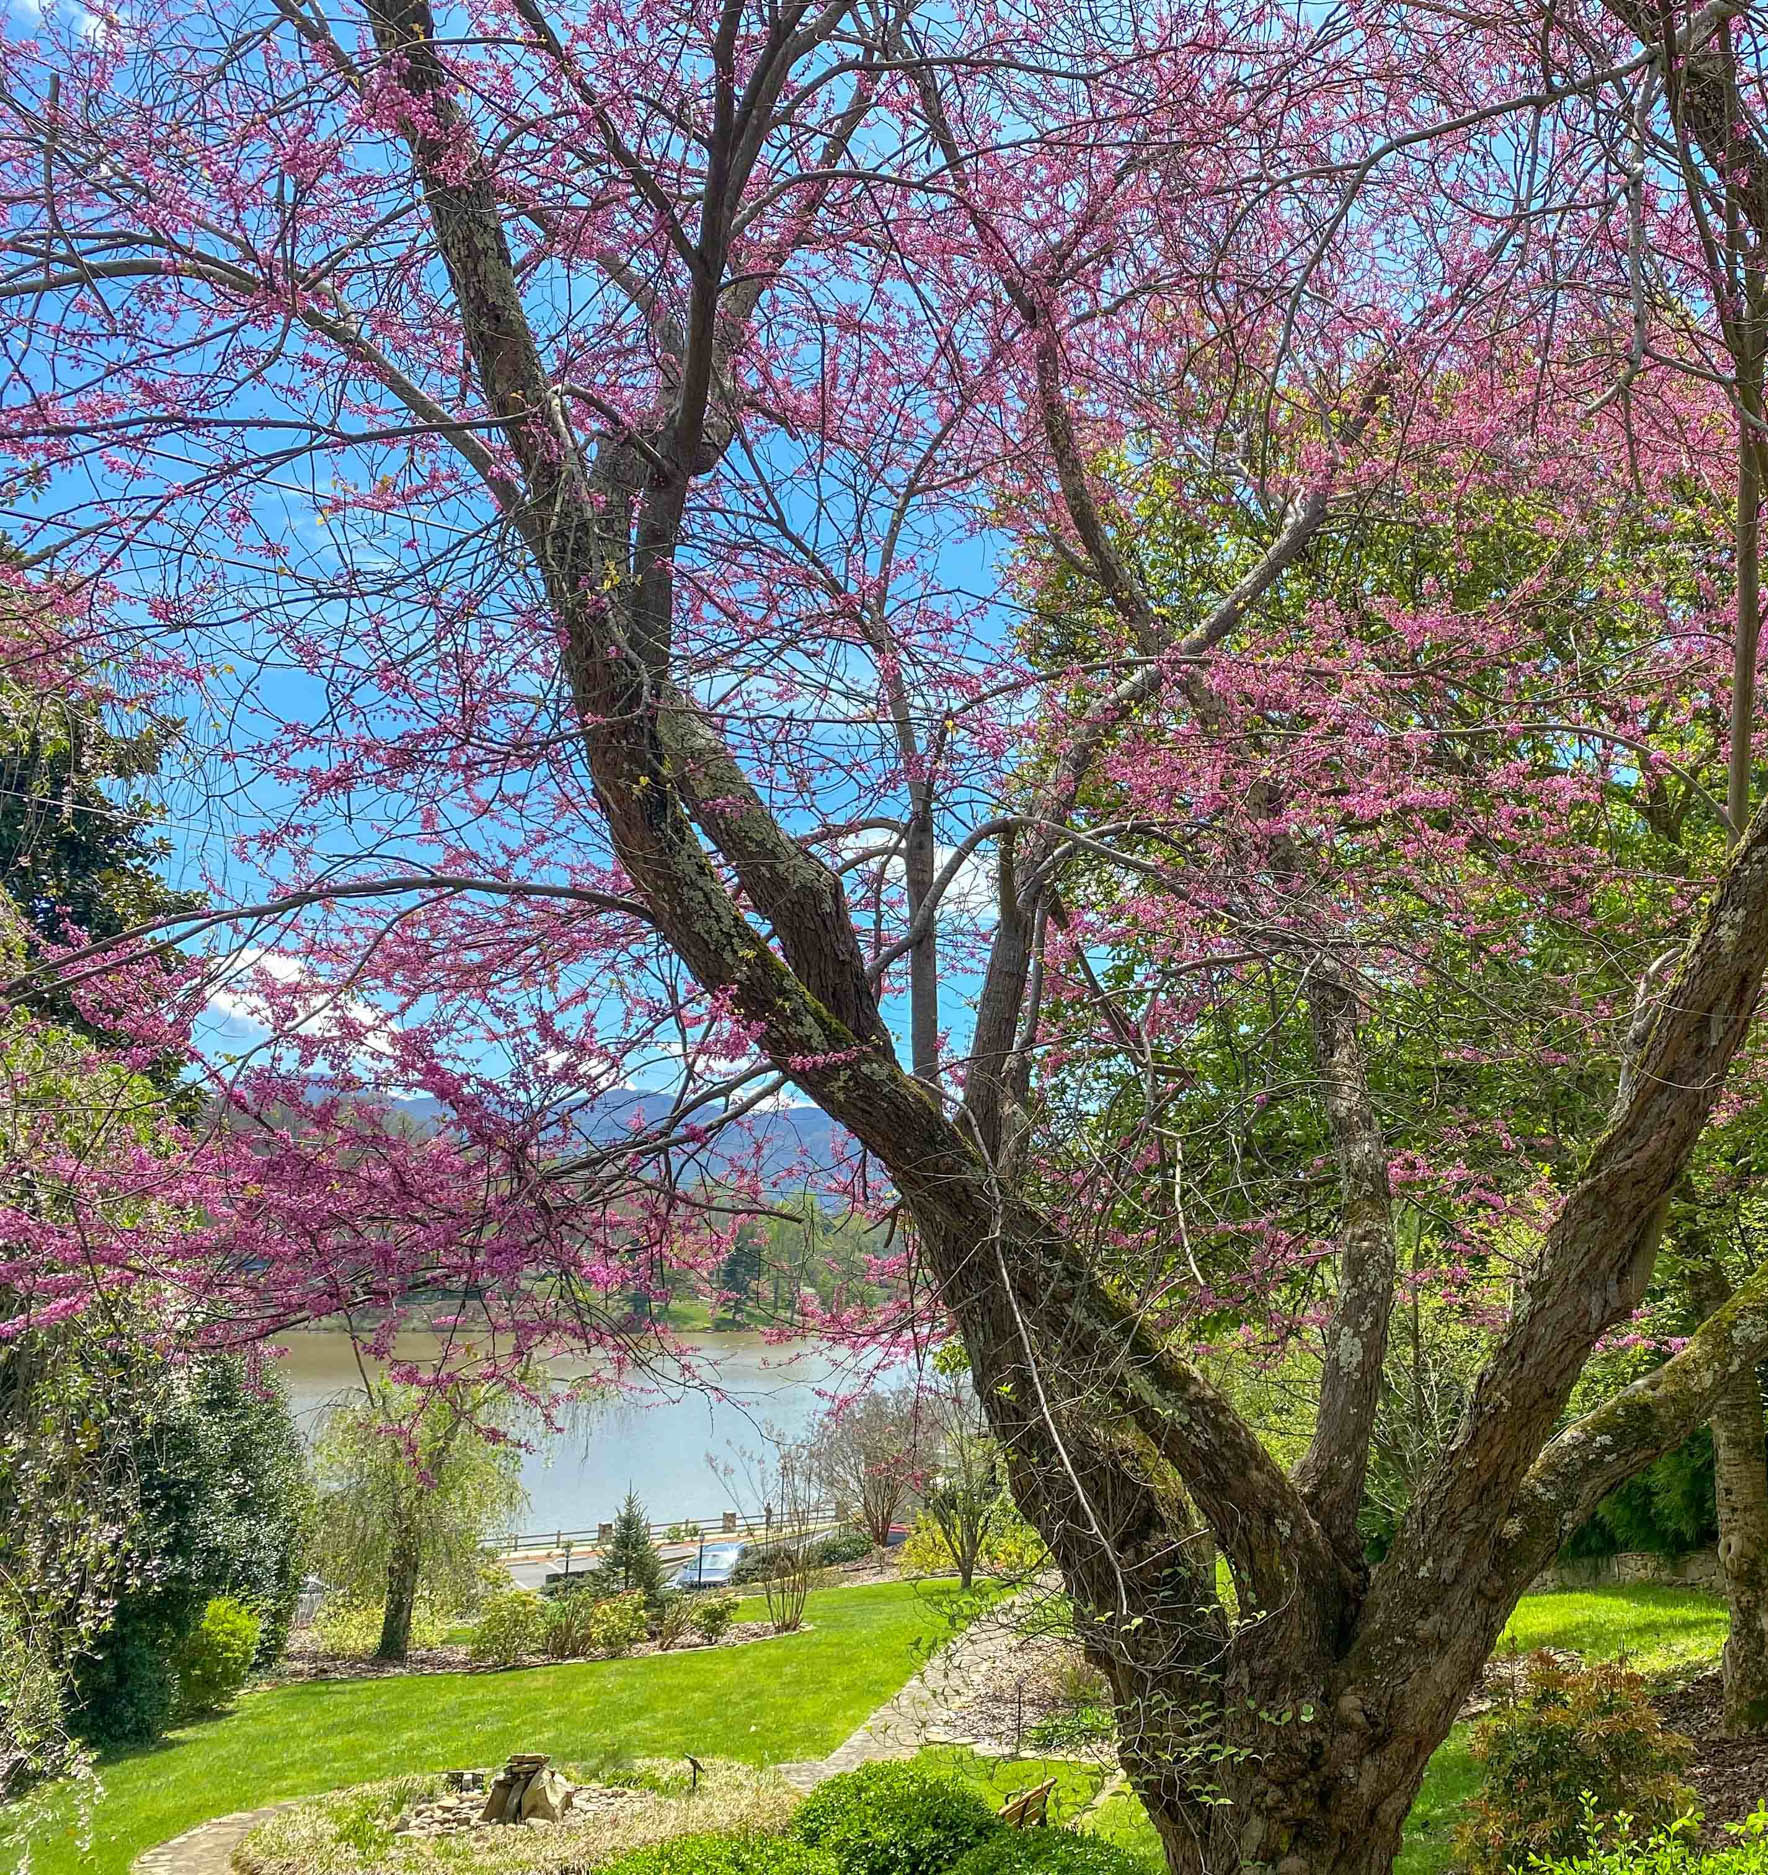 Flowering tree in bloom along Lake Junaluska's walking trail